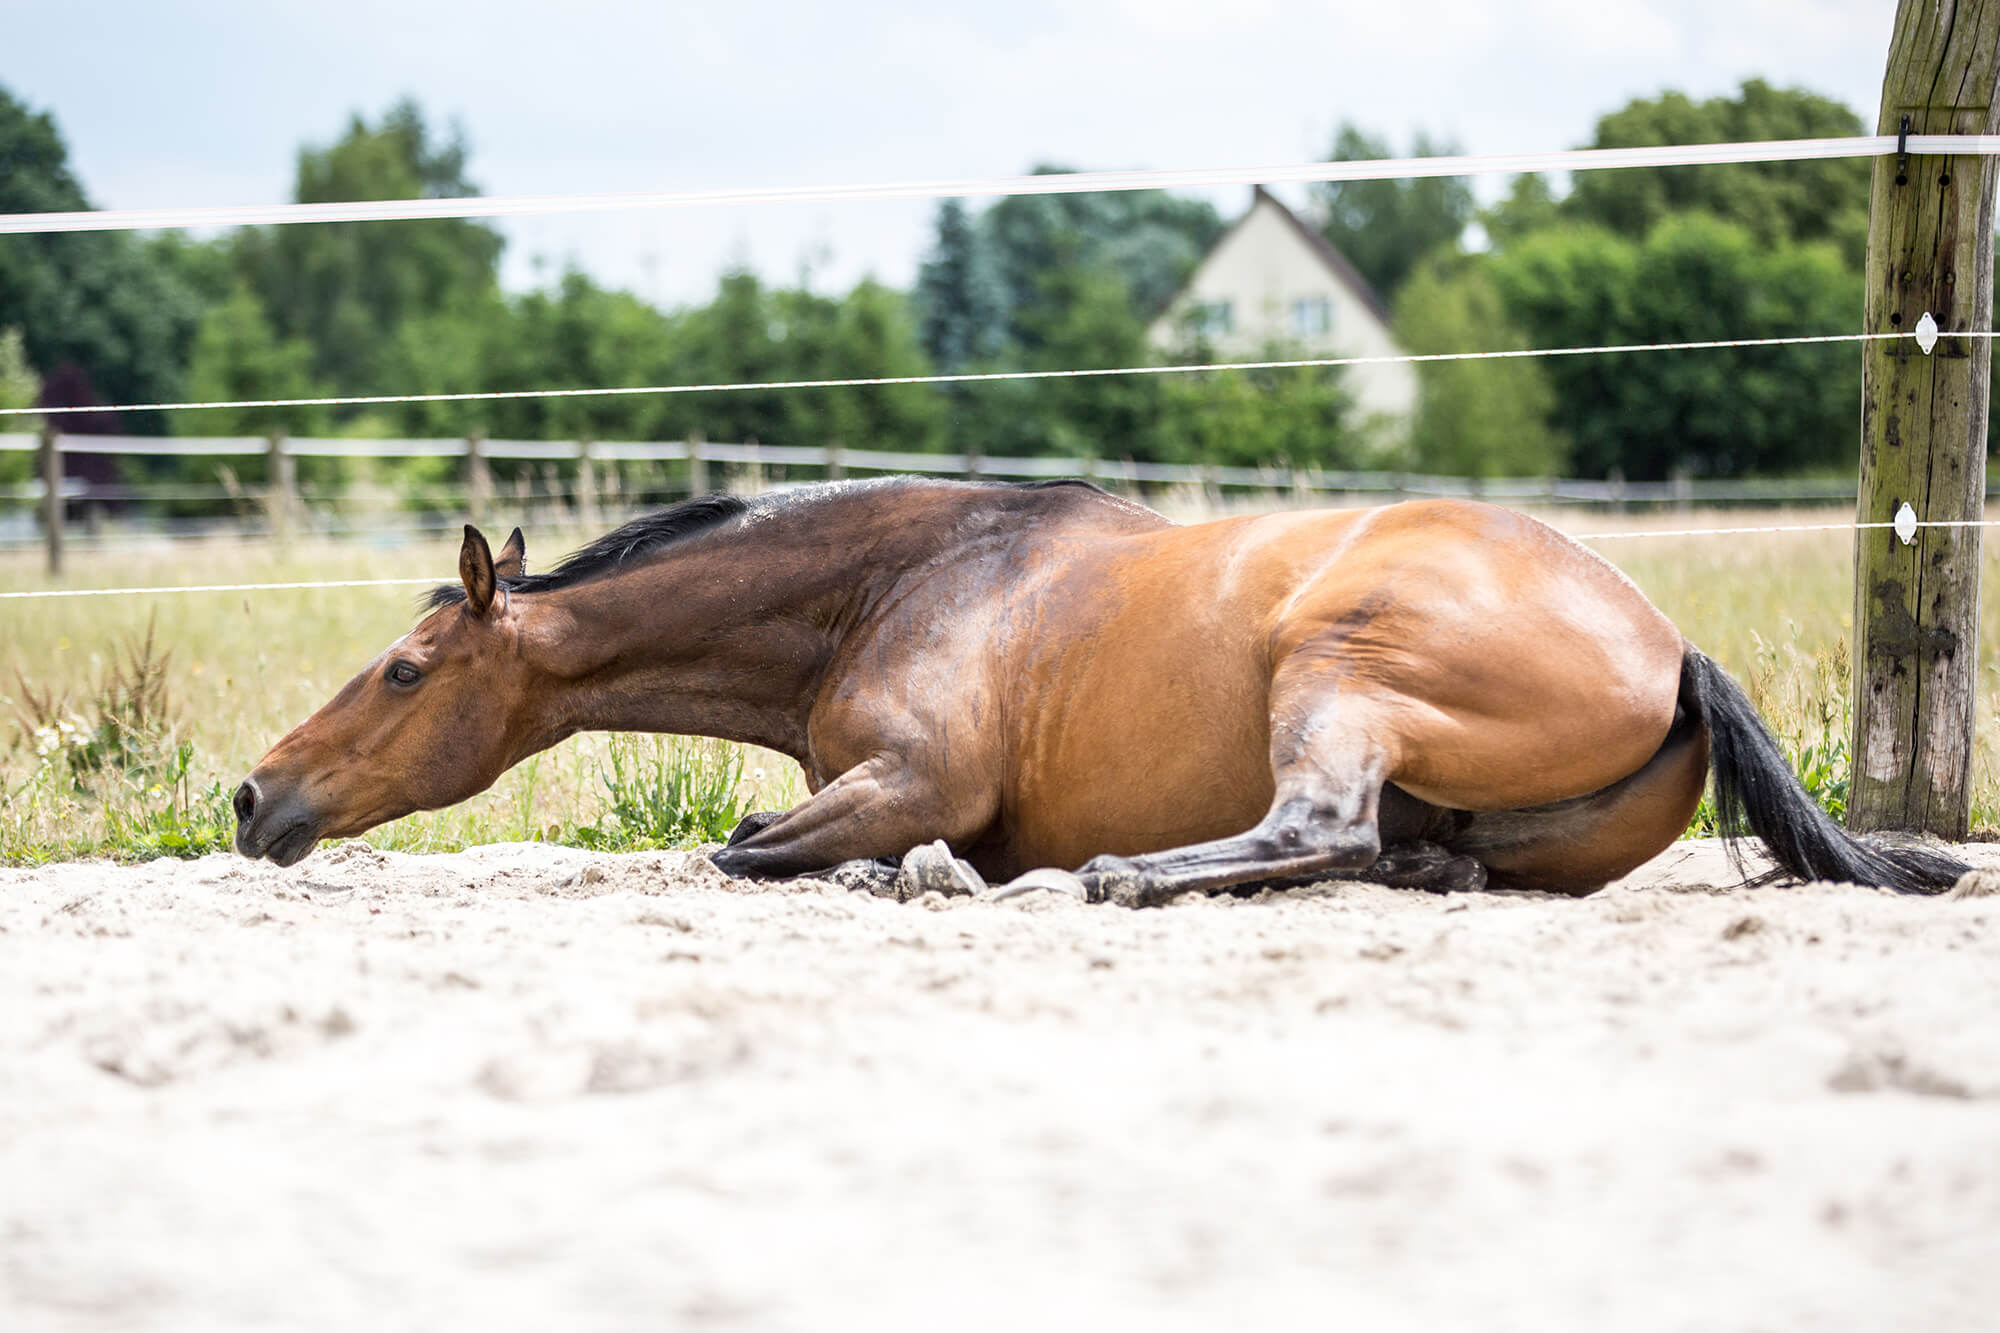 Pferd im Wohlfühlmoment beim Sandbad, ein Element des von EQUUS DESIGN PLANUNG entwickelten Konzepts für Pferdewohl und natürliche Haltung.